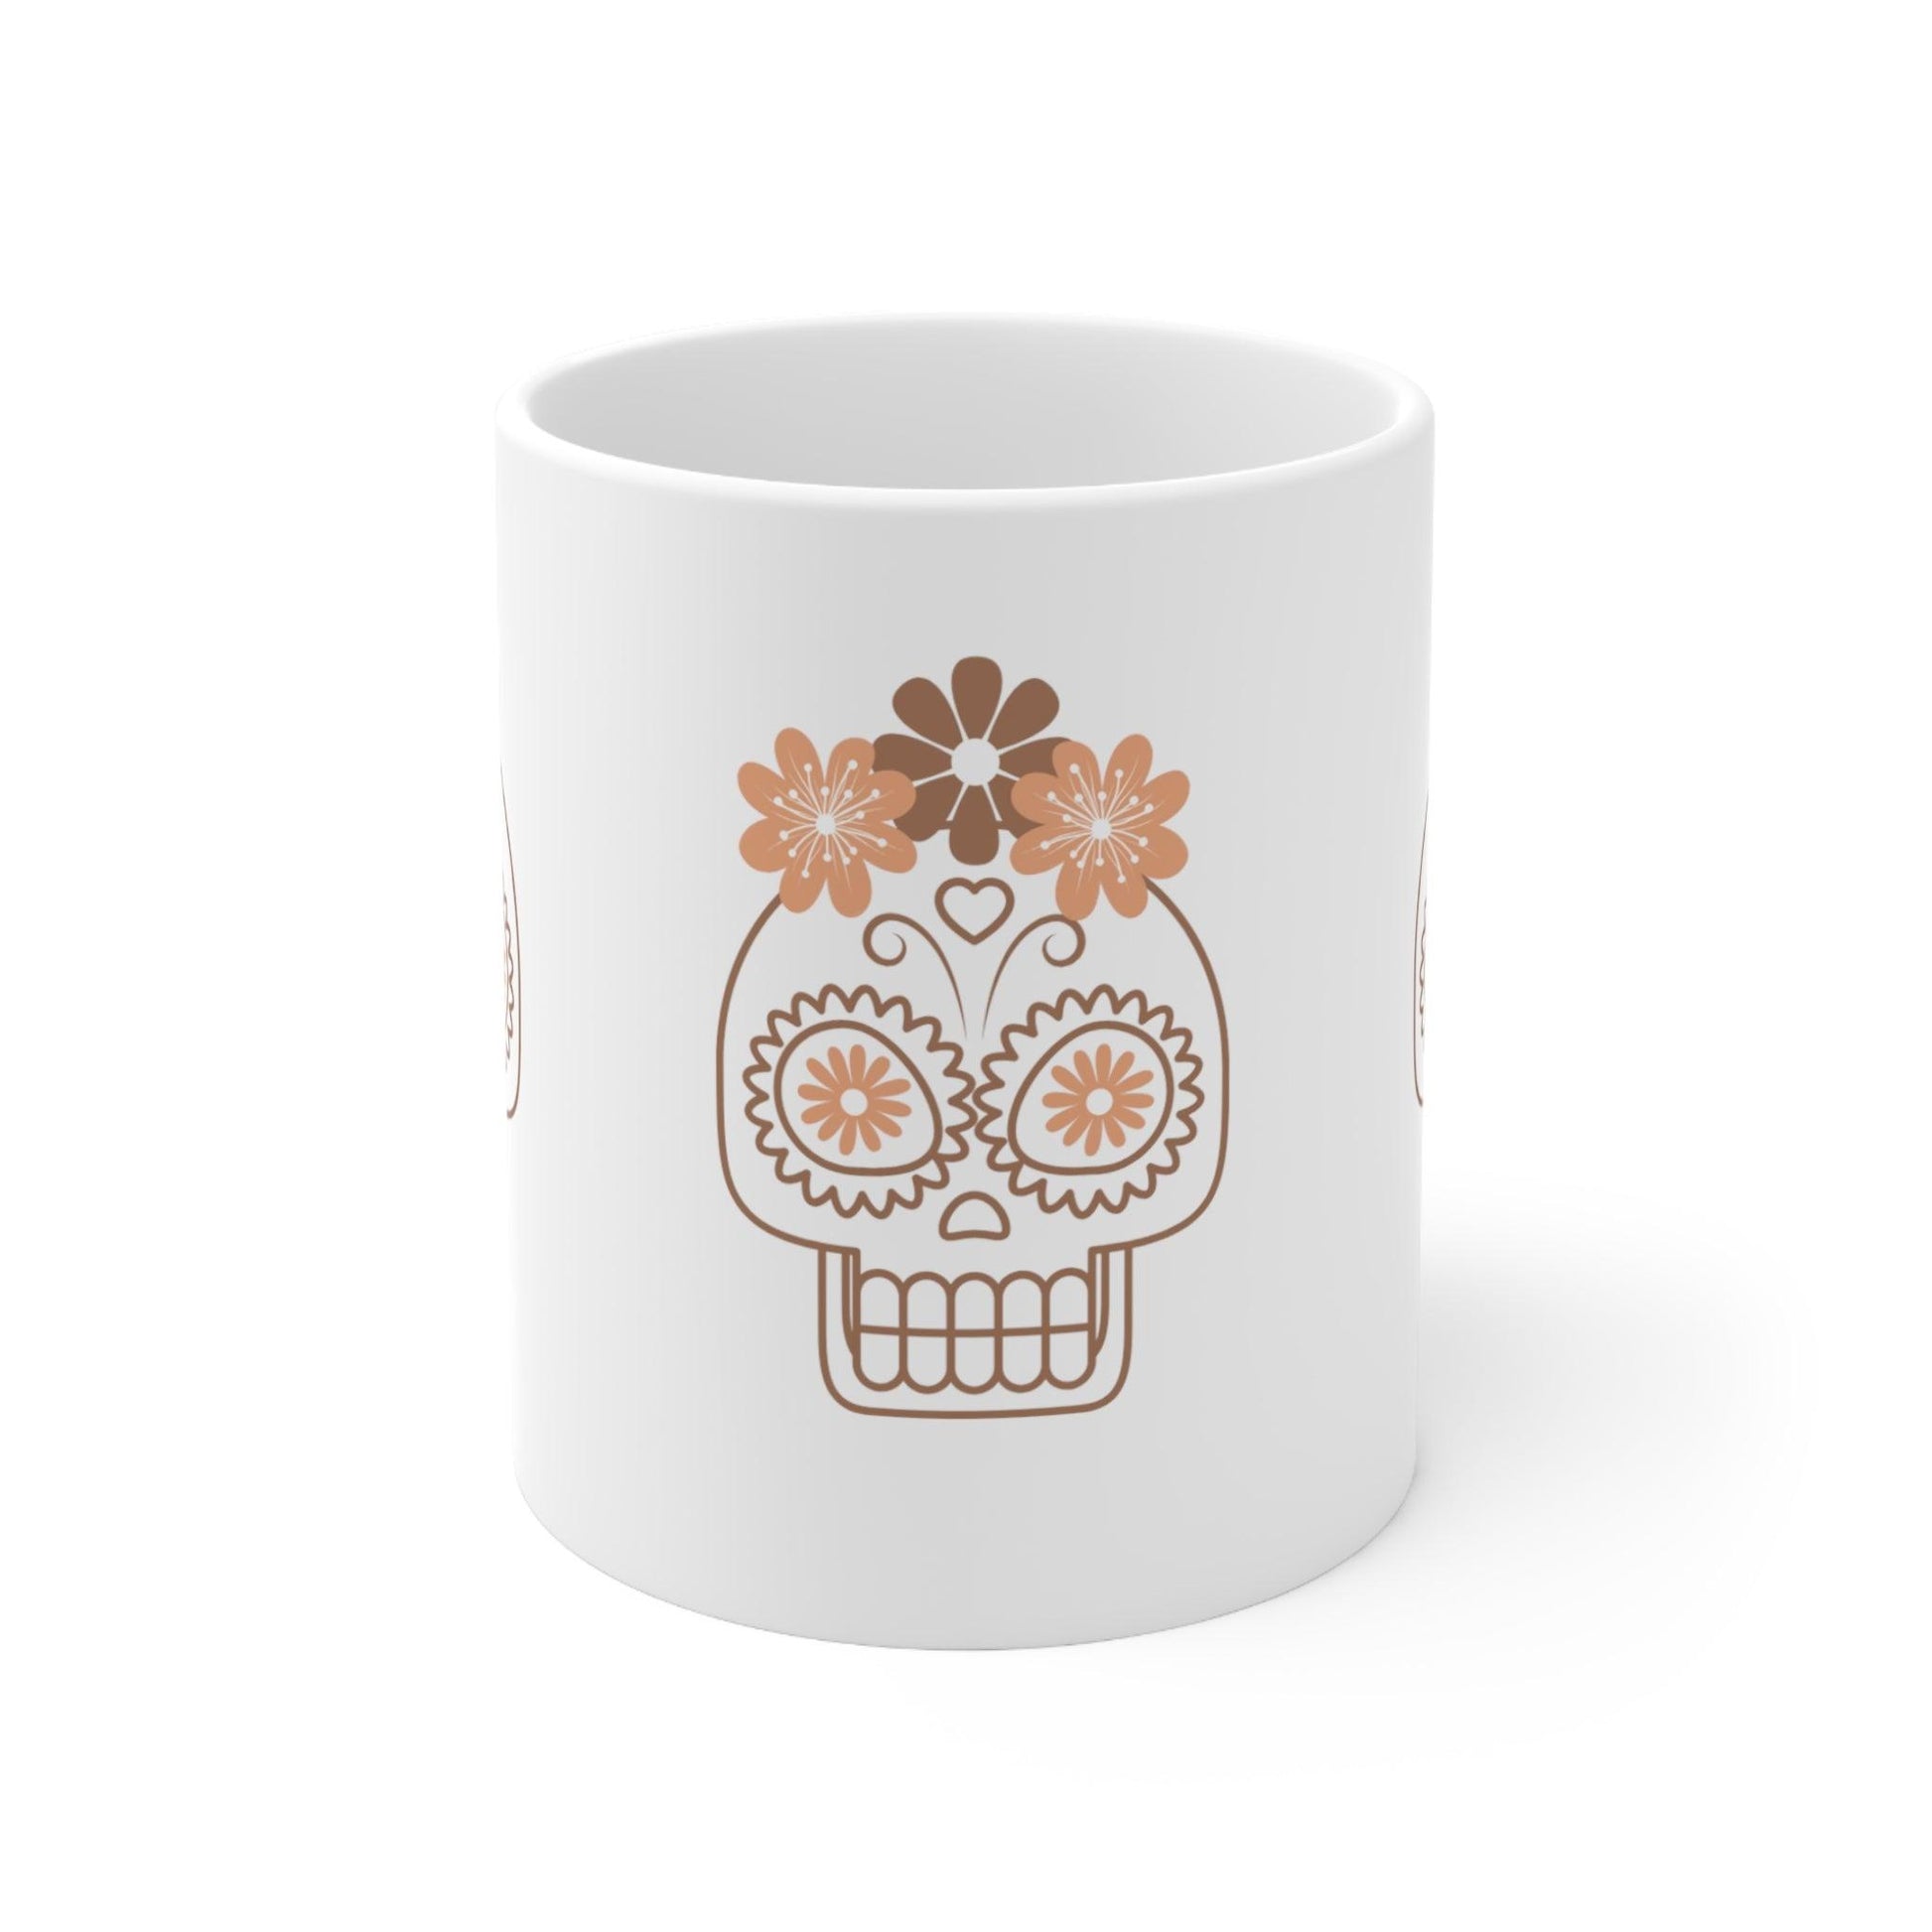 Dia De Los Muertos - Ceramic Mug - The Pura Vida Co.